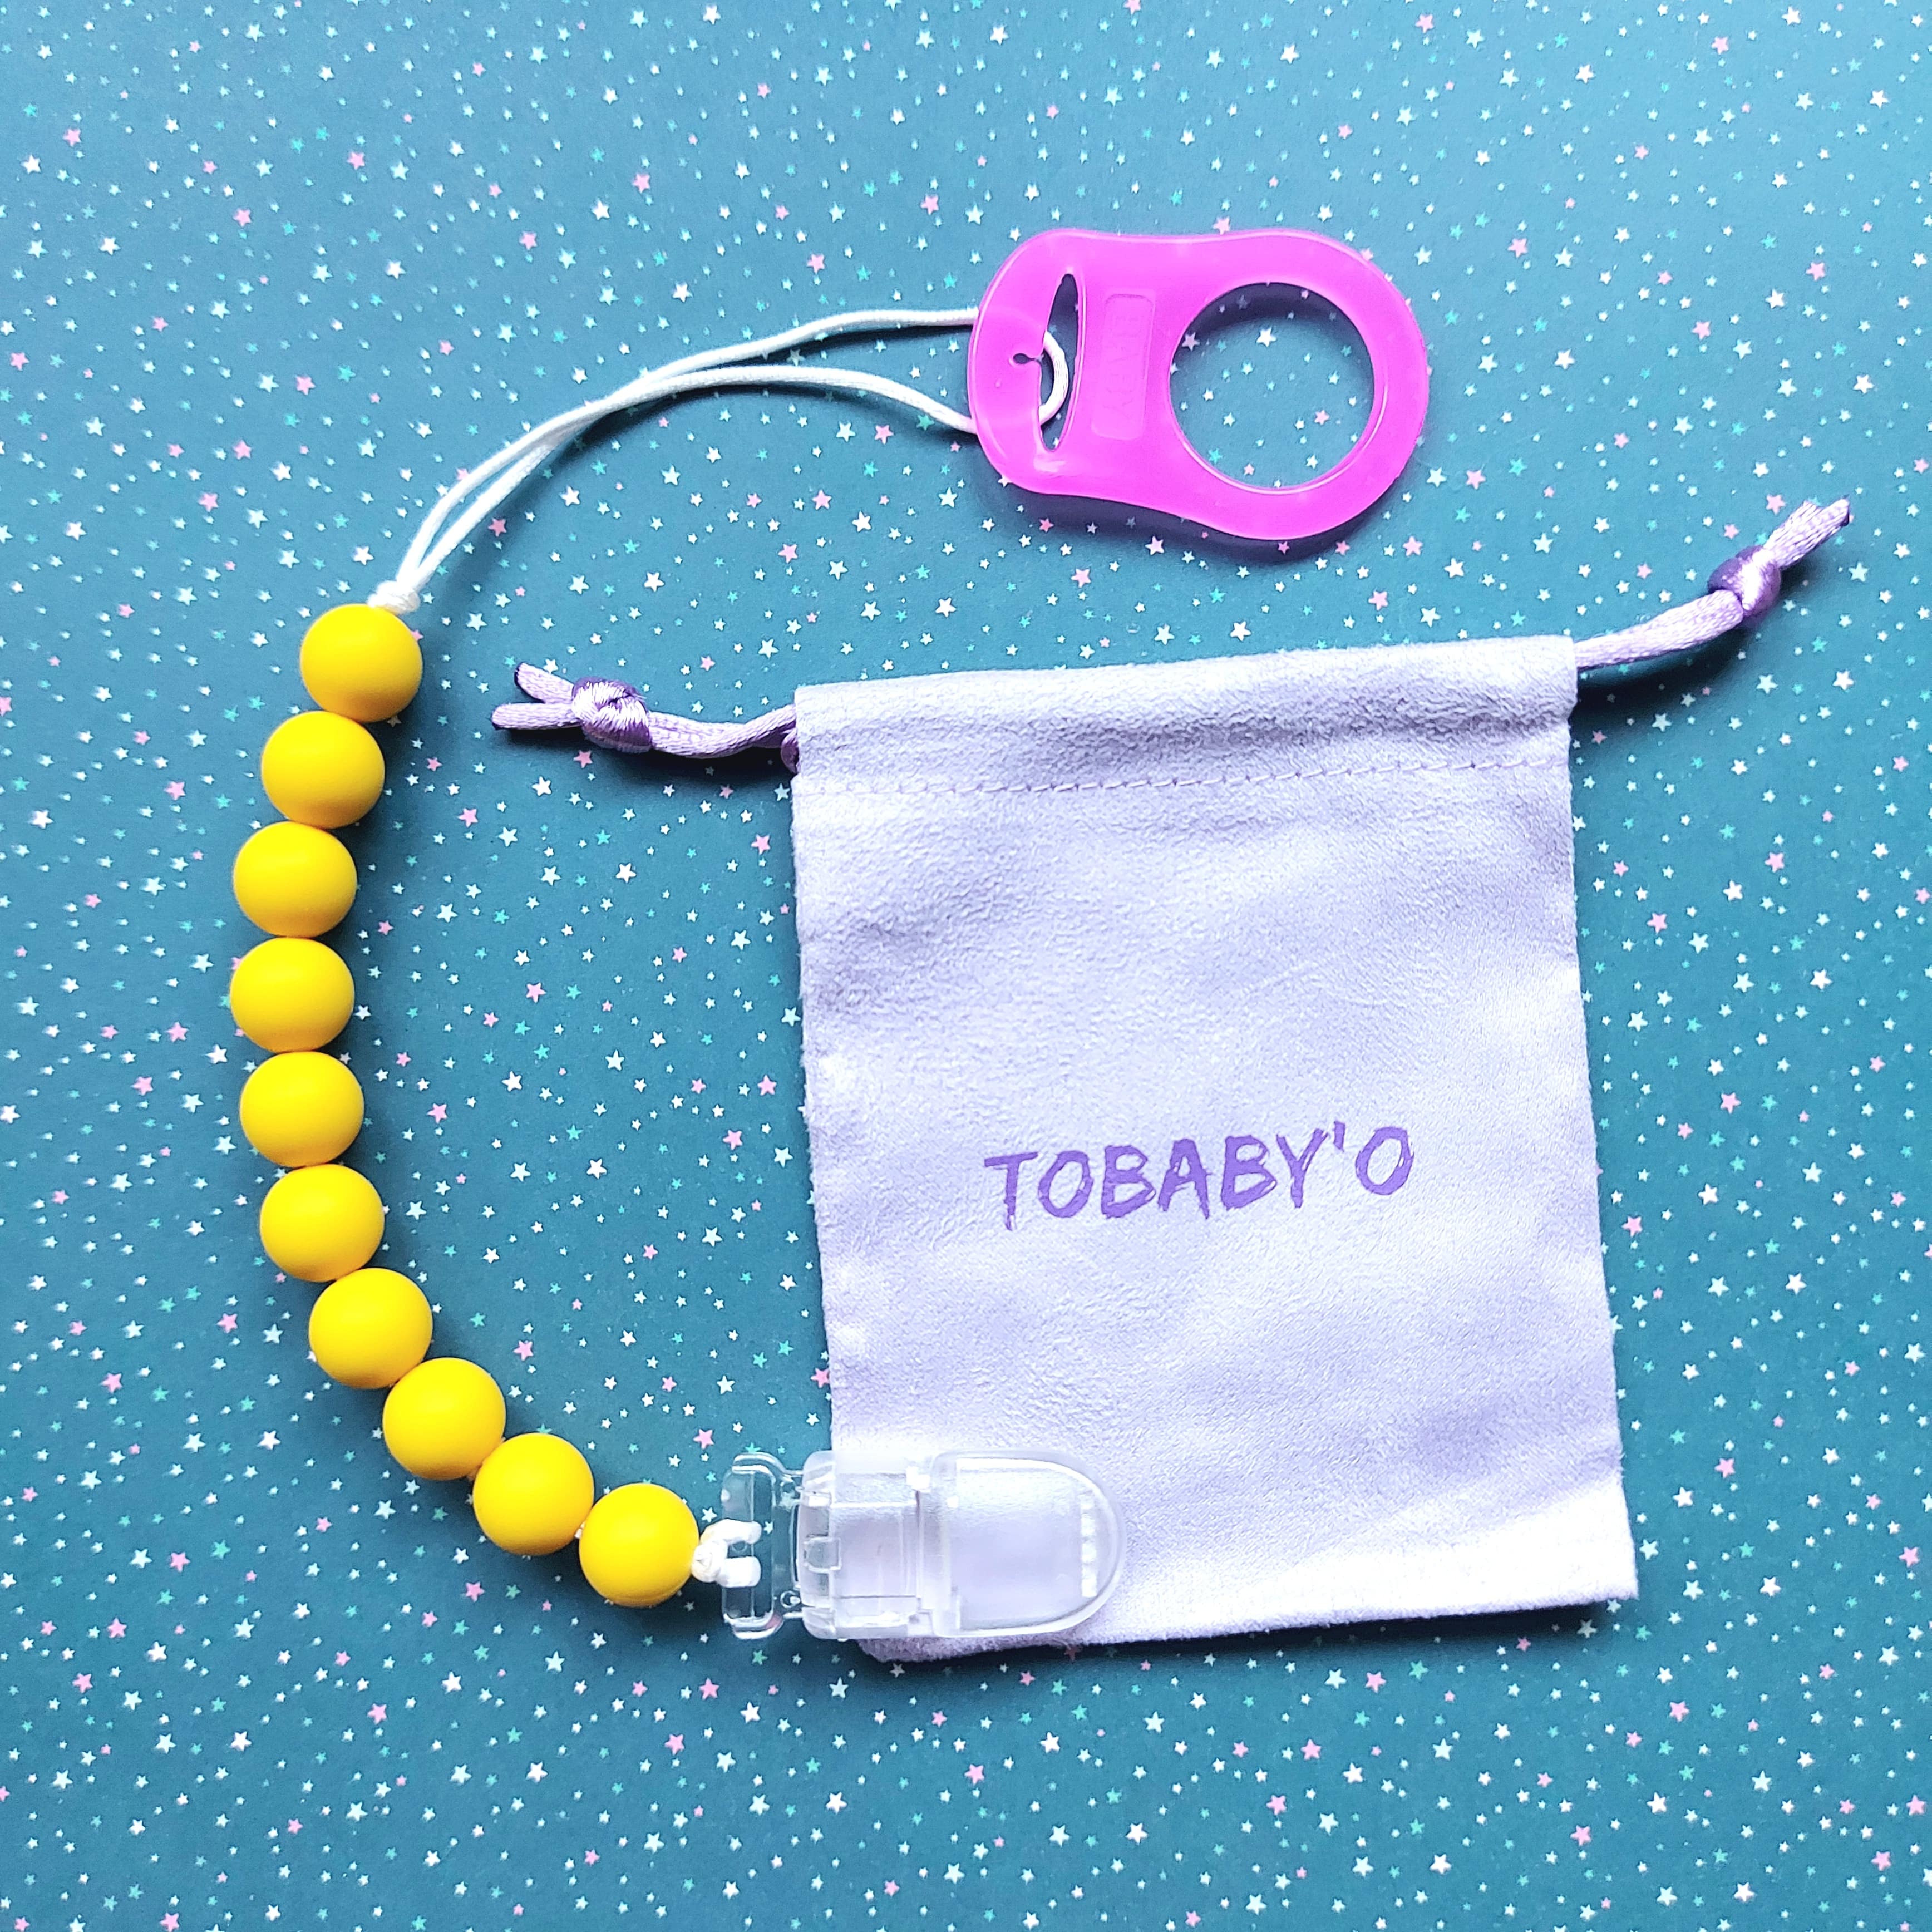 Tobabyo - Attache Tétine en Silicone Jaune